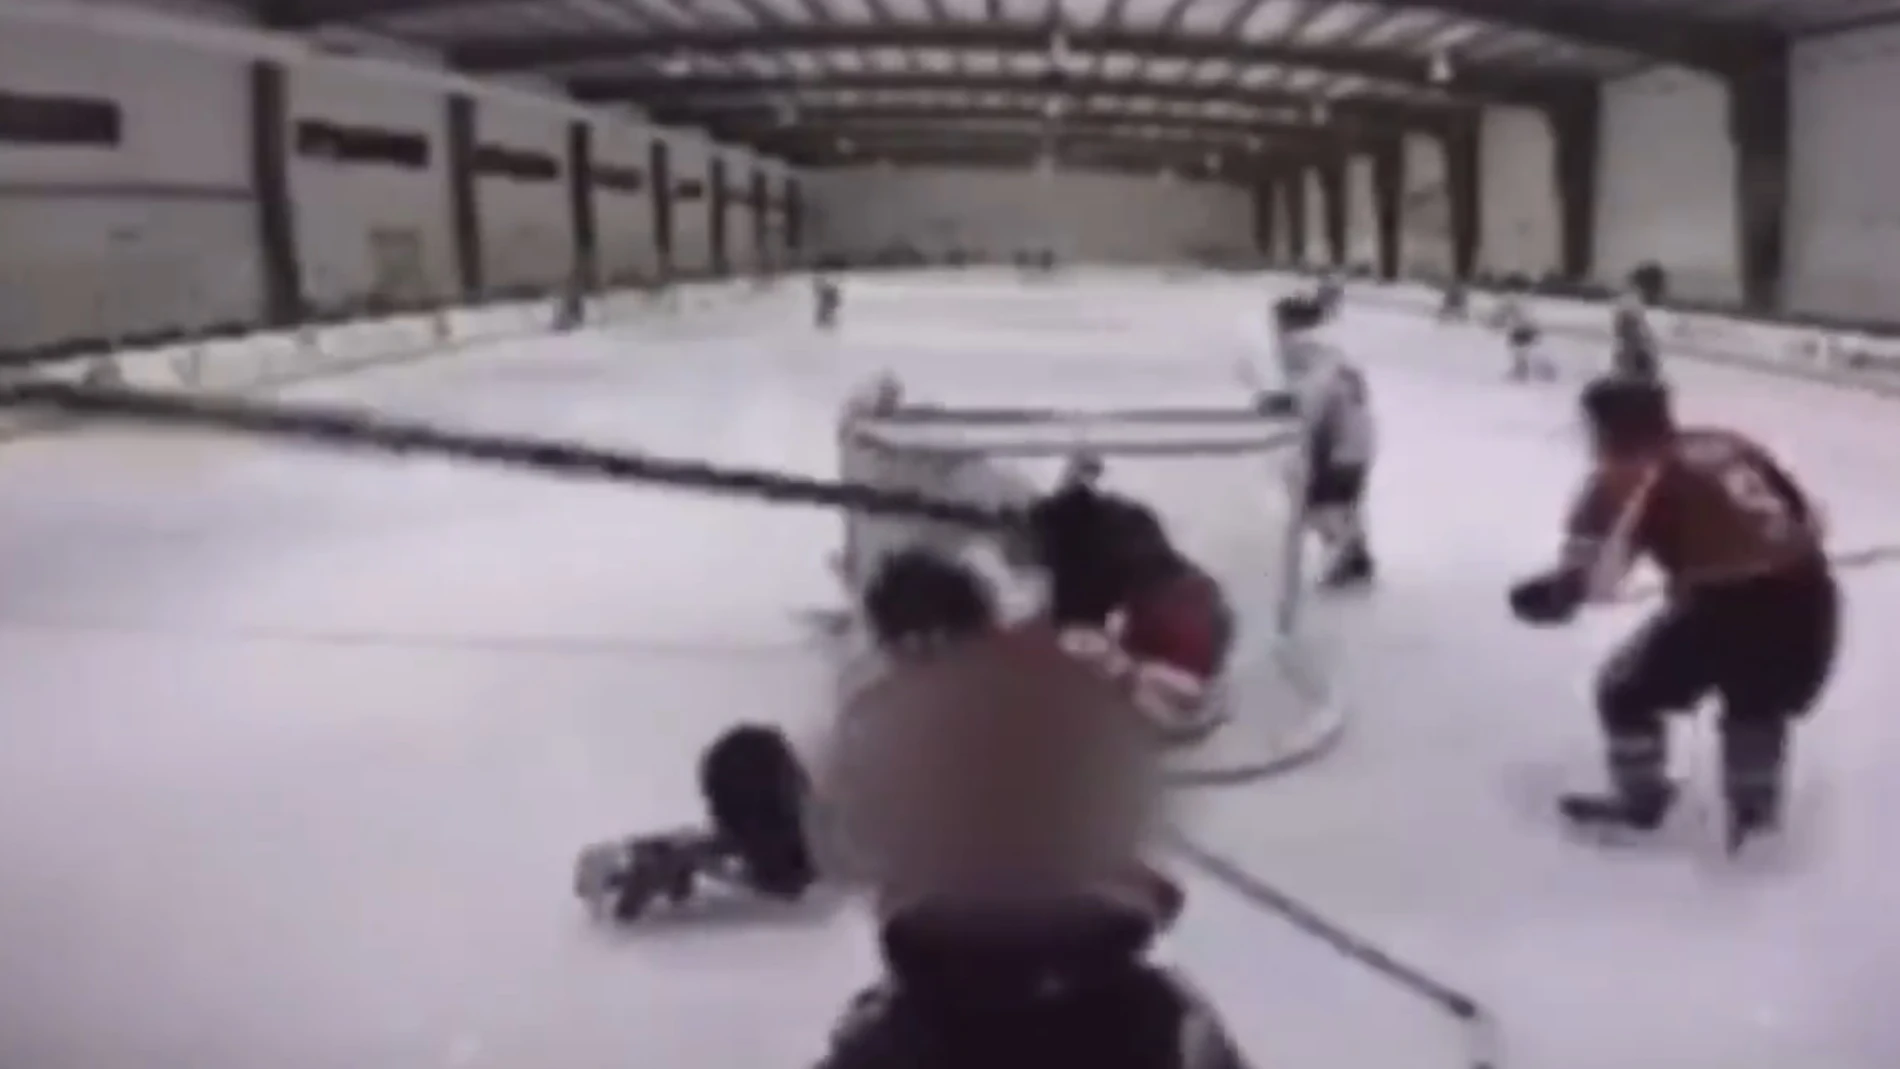 La agresión de un jugador en una liga de hockey hielo de adolescentes